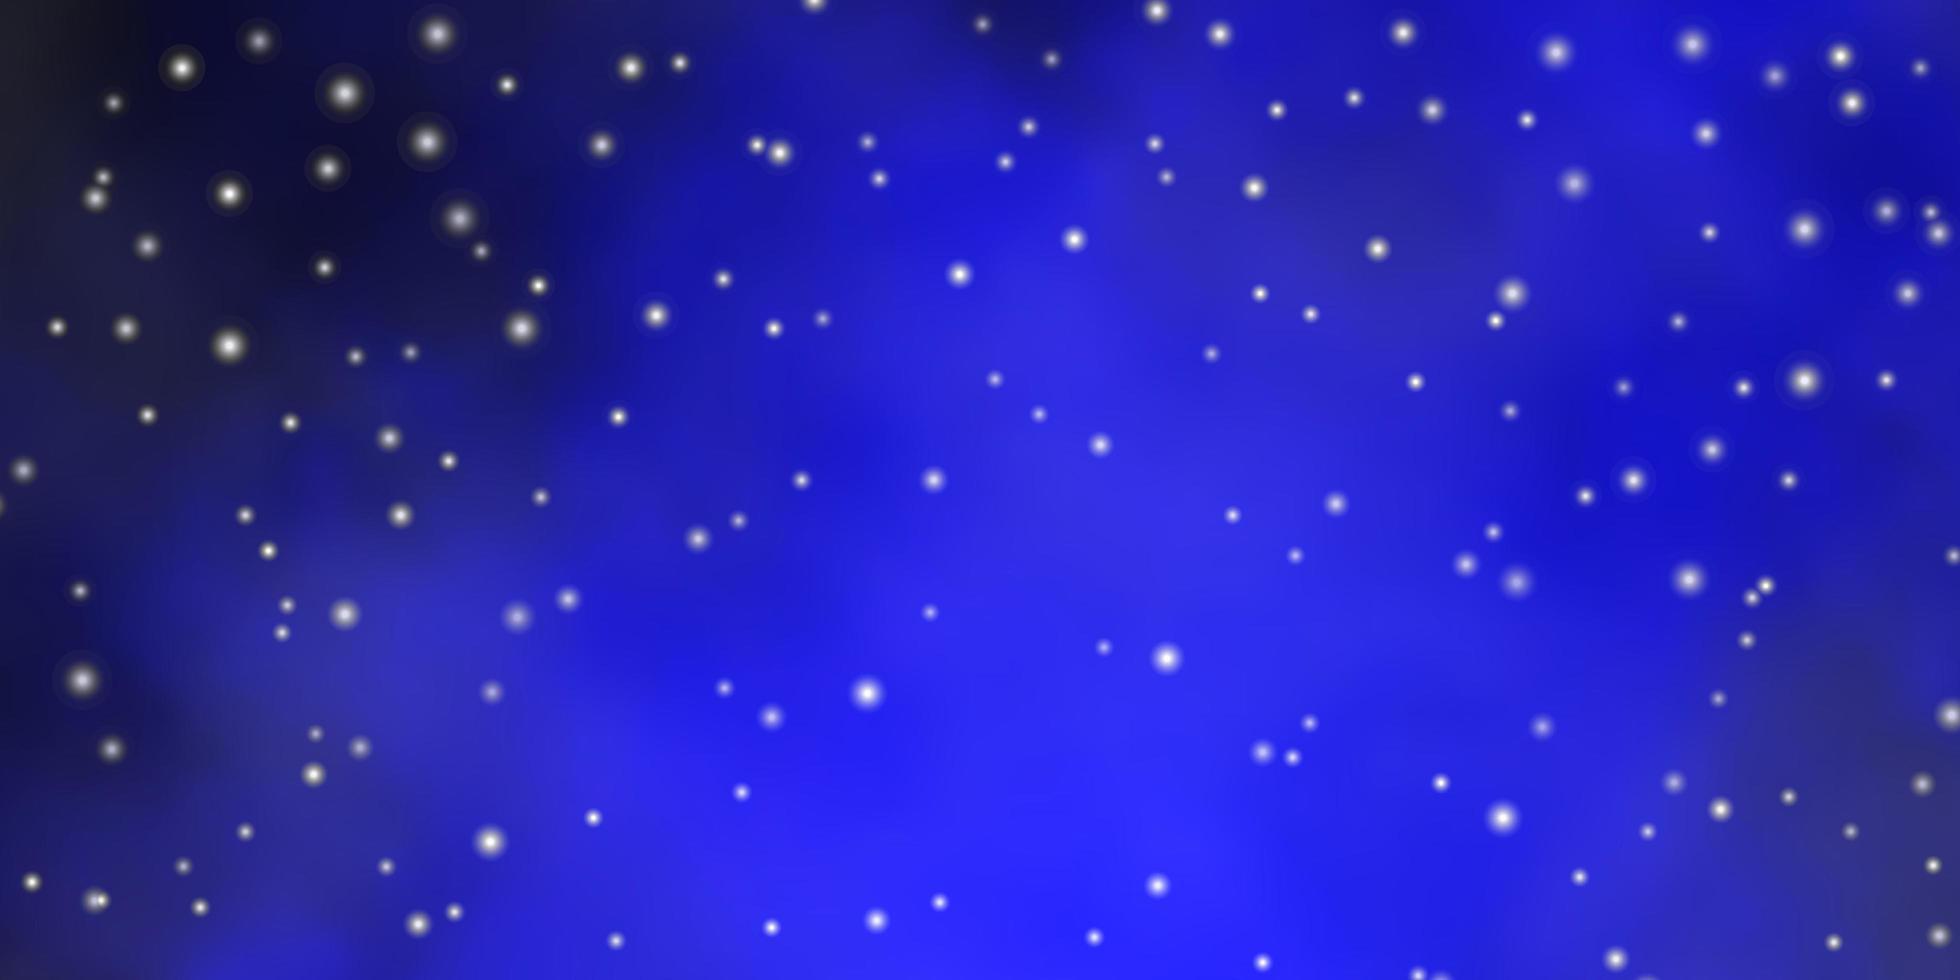 fundo vector azul escuro com estrelas coloridas ilustração decorativa com estrelas no design de modelo abstrato para promoção de negócios